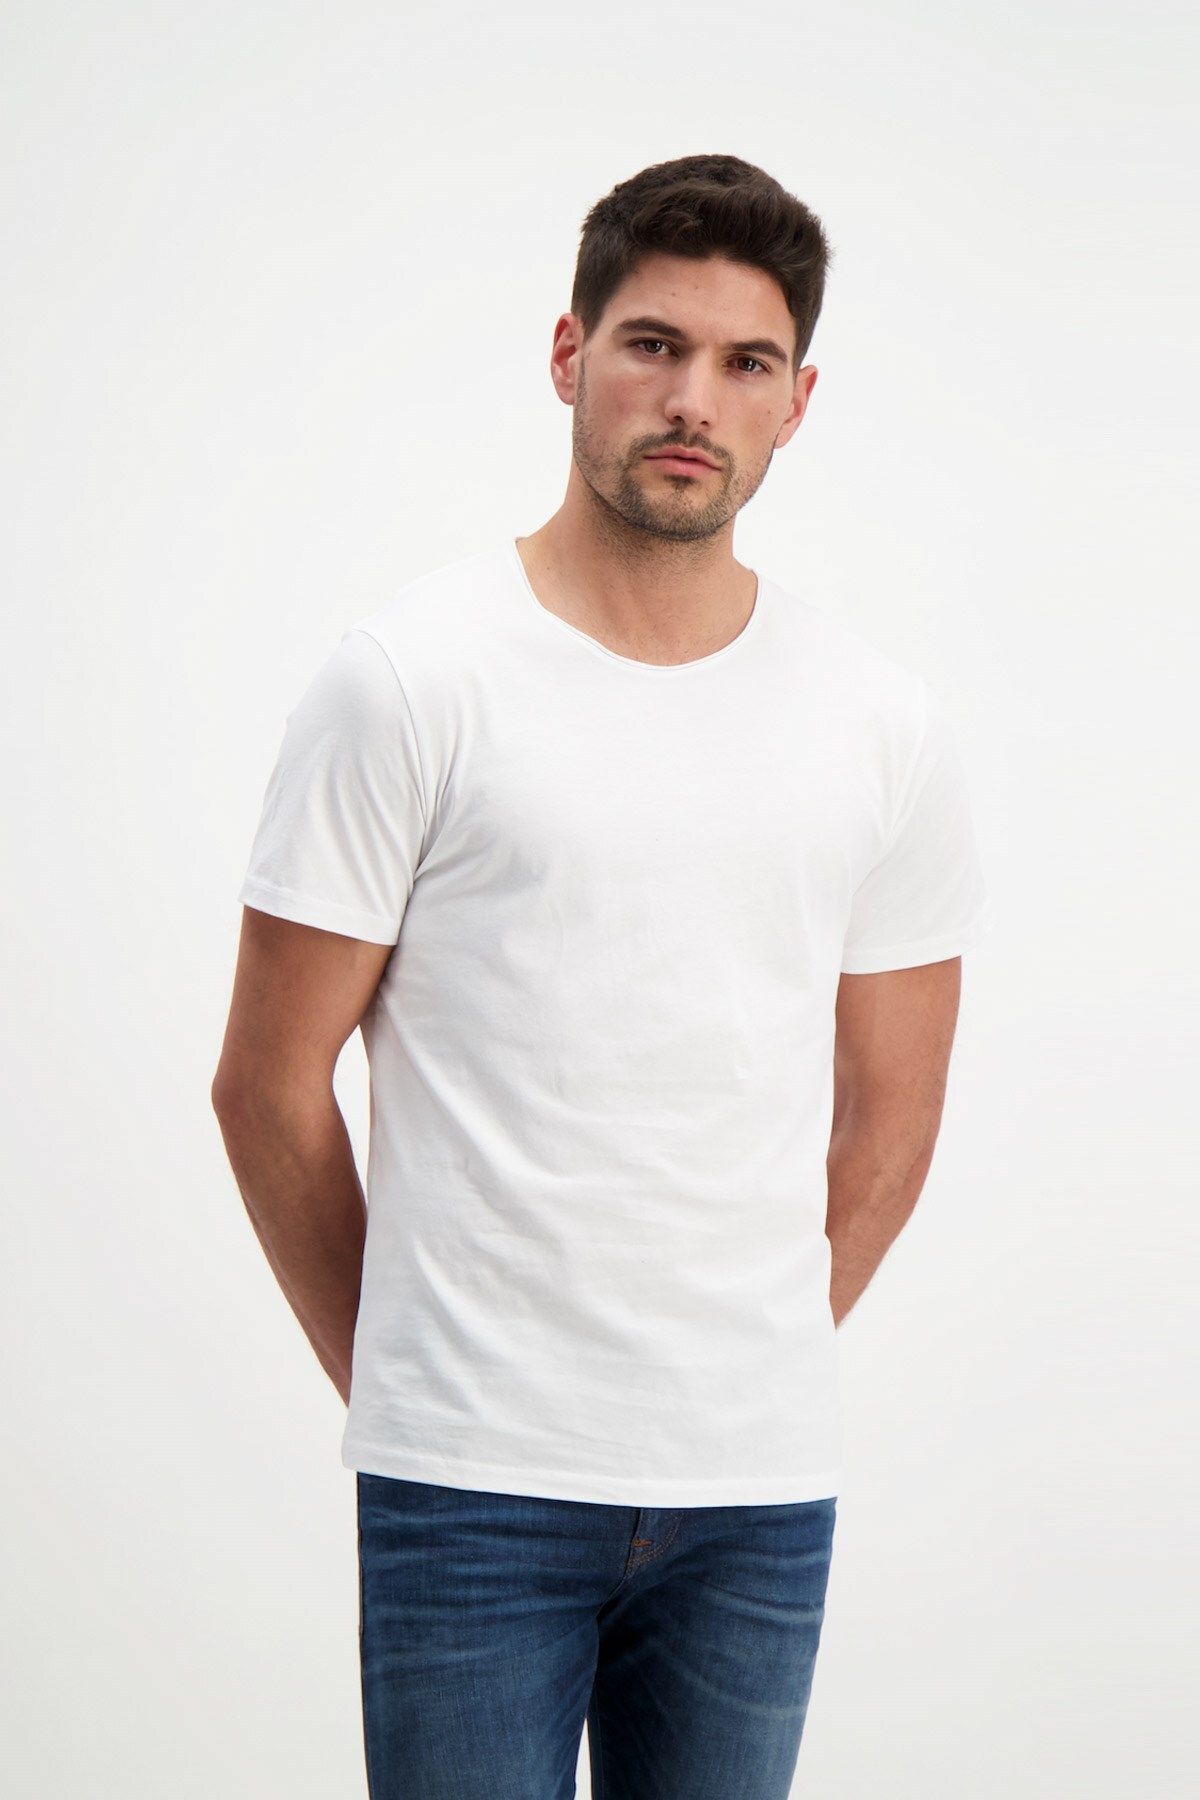 Rich Erkek Yıkamalı Basic T-shirt Tişört %100 Pamuk Tişört